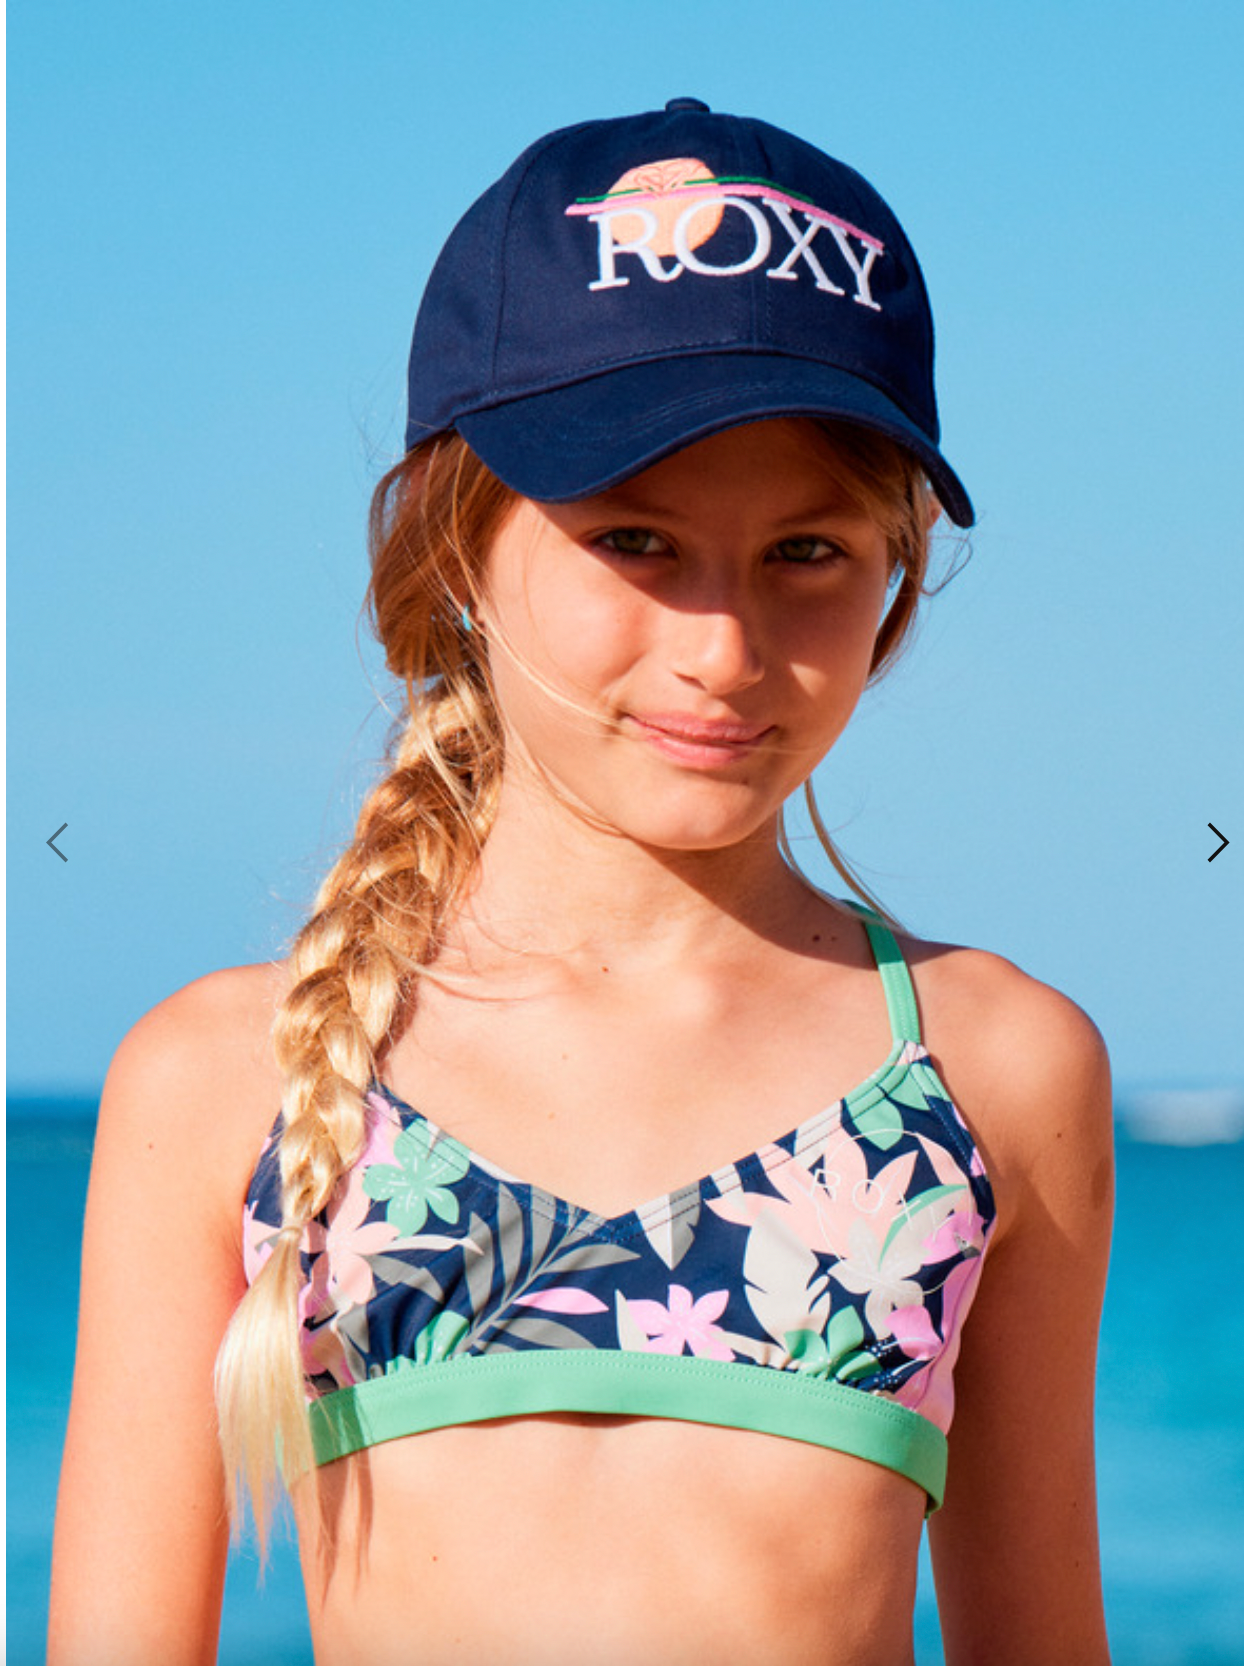 ROXY Blondie Girl - Baseball Cap for Girls